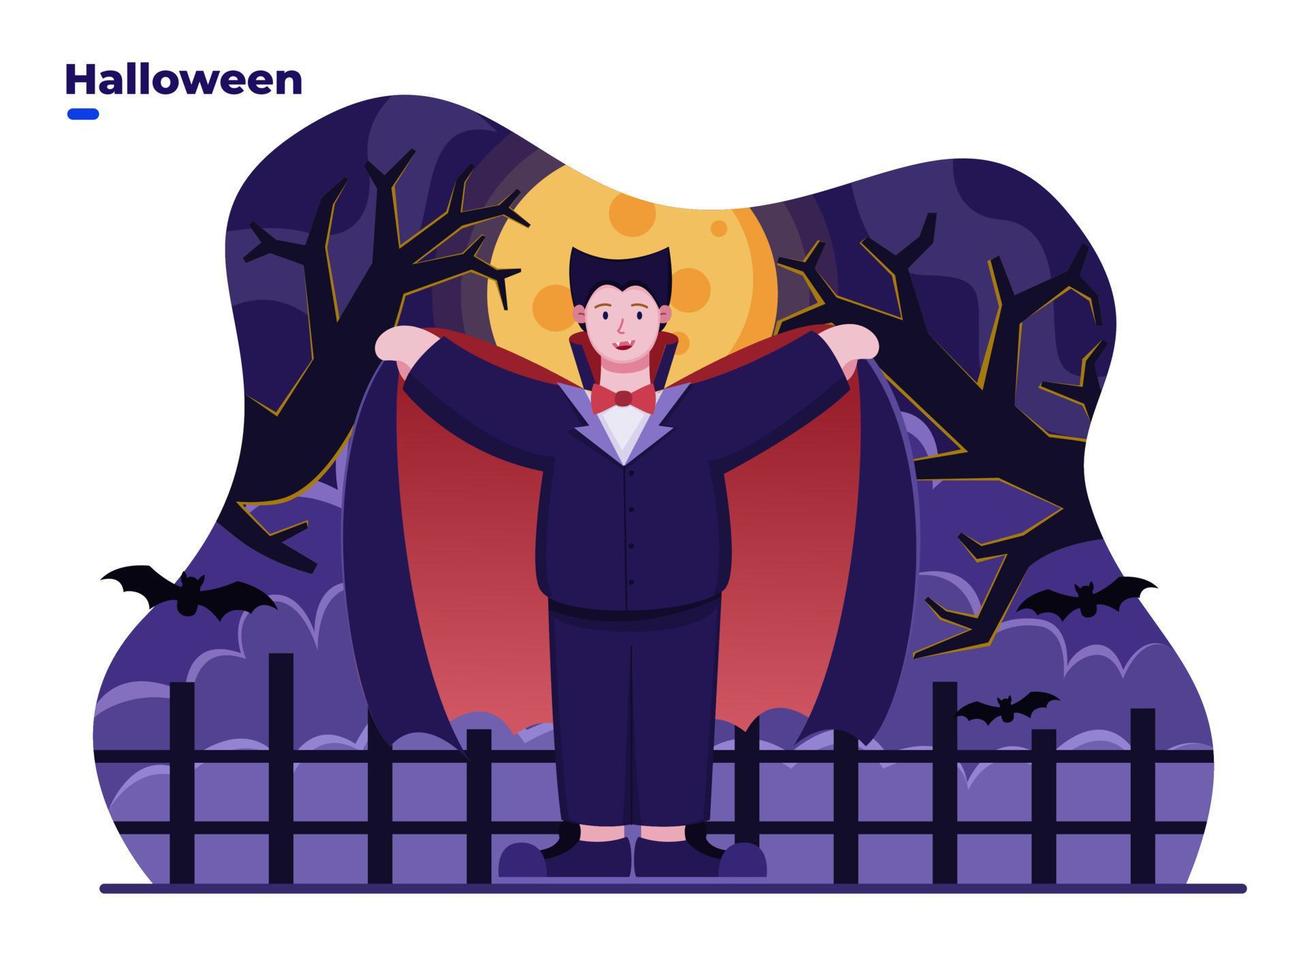 crianças de ilustração plana vestindo fantasia de vampiro para comemorar o dia de halloween. feliz dia de halloween. pode ser usado para cartão postal, cartão postal, convite, banner, cartaz, mídia social. vetor